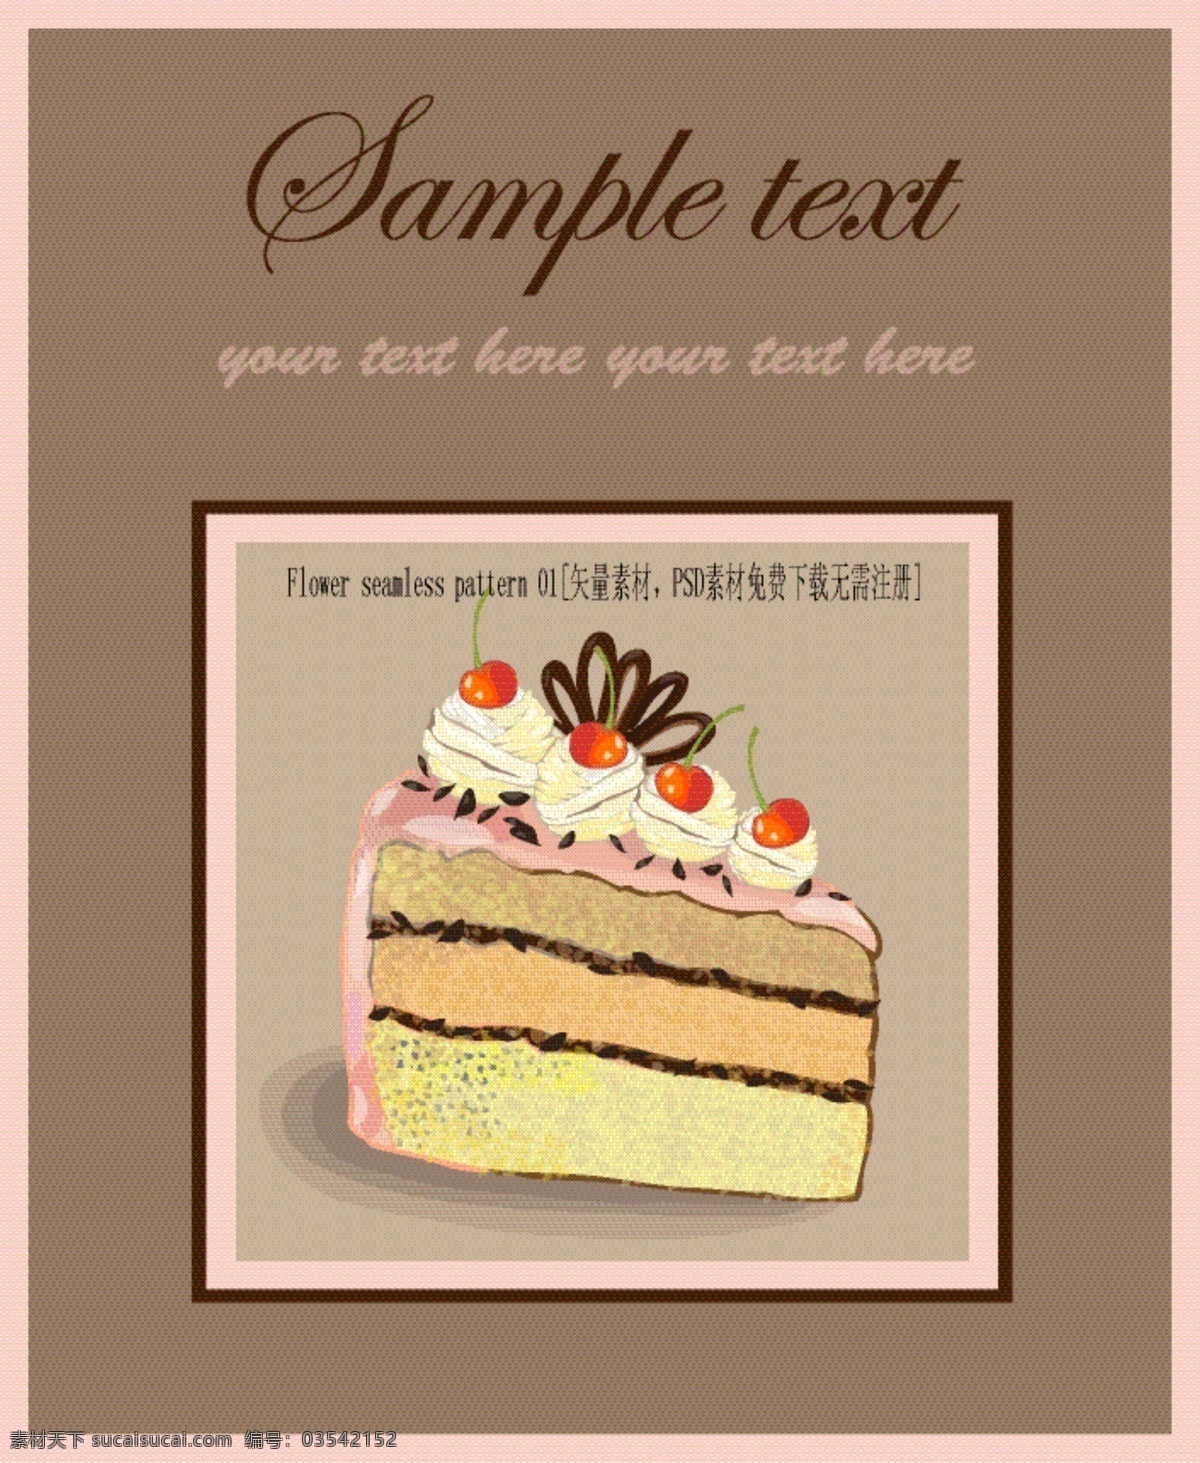 矢量 精致 糕点 封面设计 菜单 巧克力 西式糕点 新鲜水果 夹心蛋糕 奶油 蛋糕 海报 其他海报设计